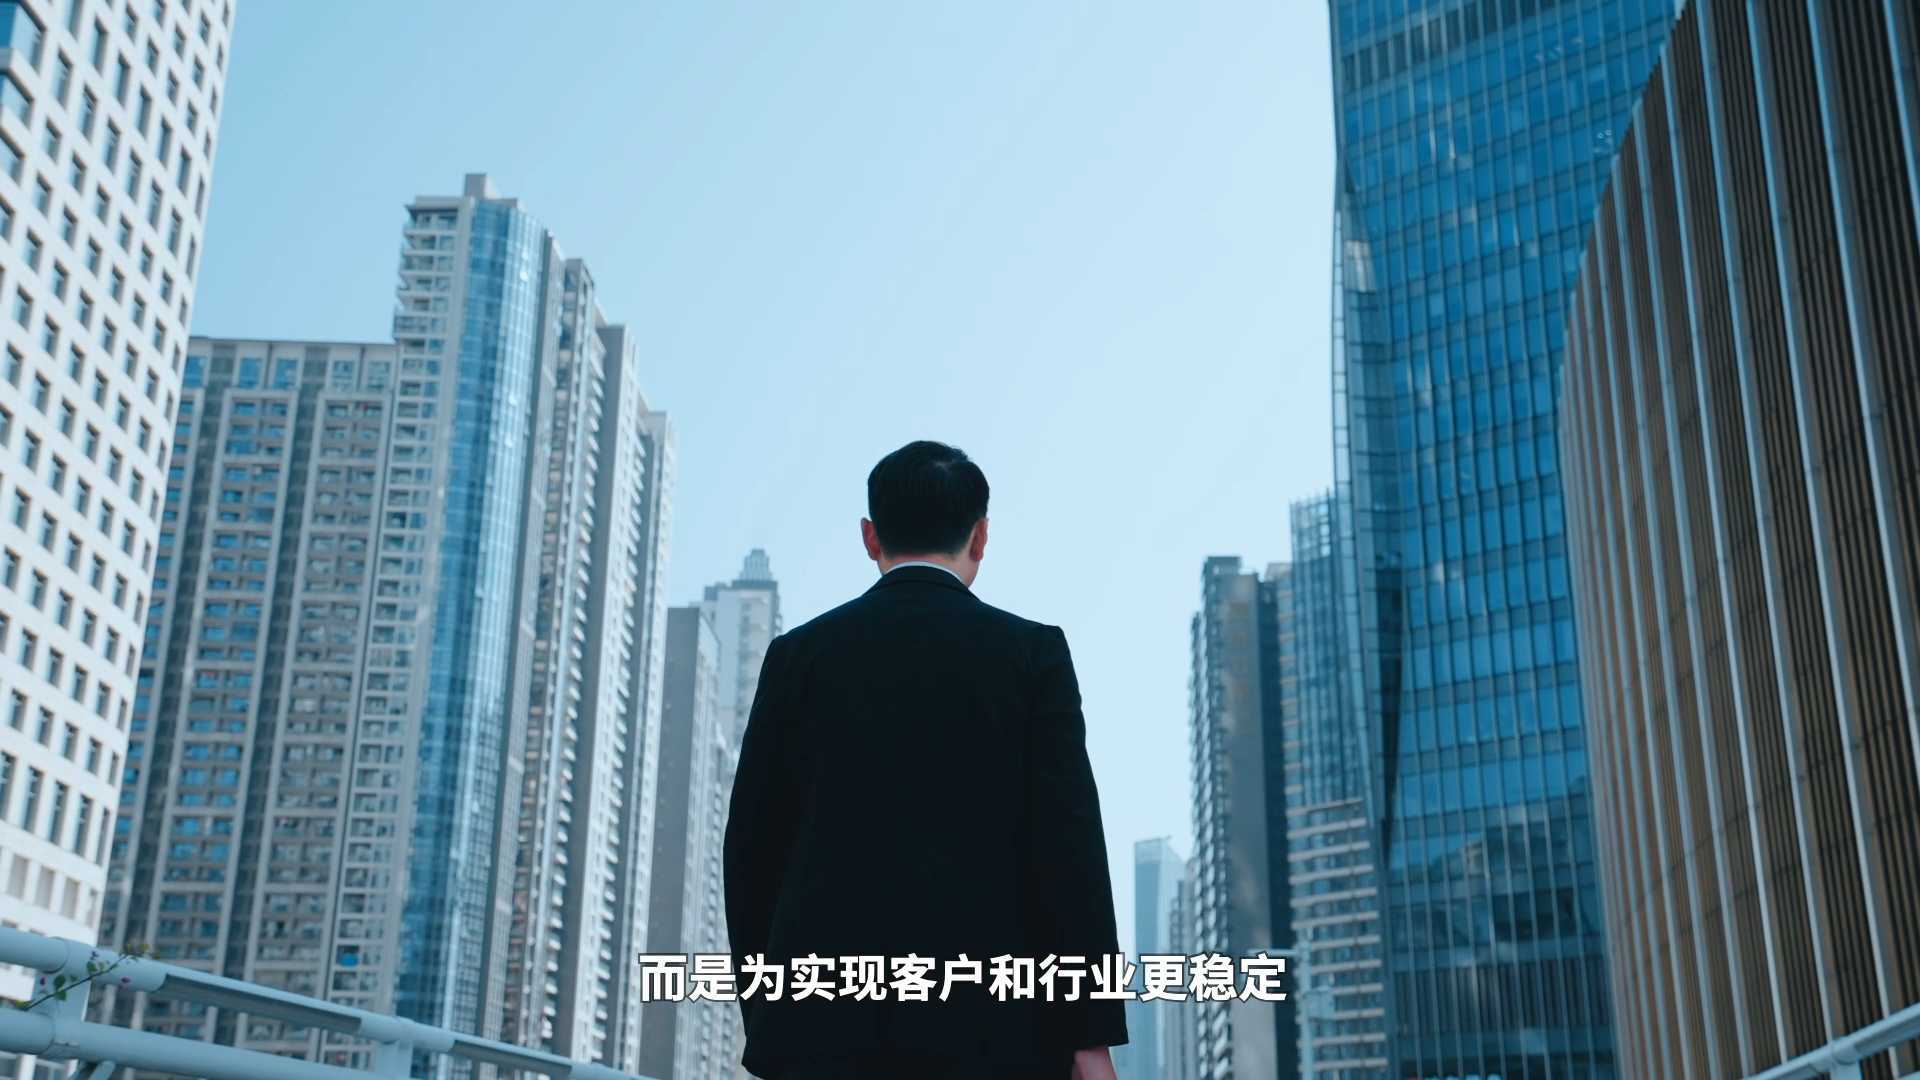 浩云长盛集团 宣传片《实现者》